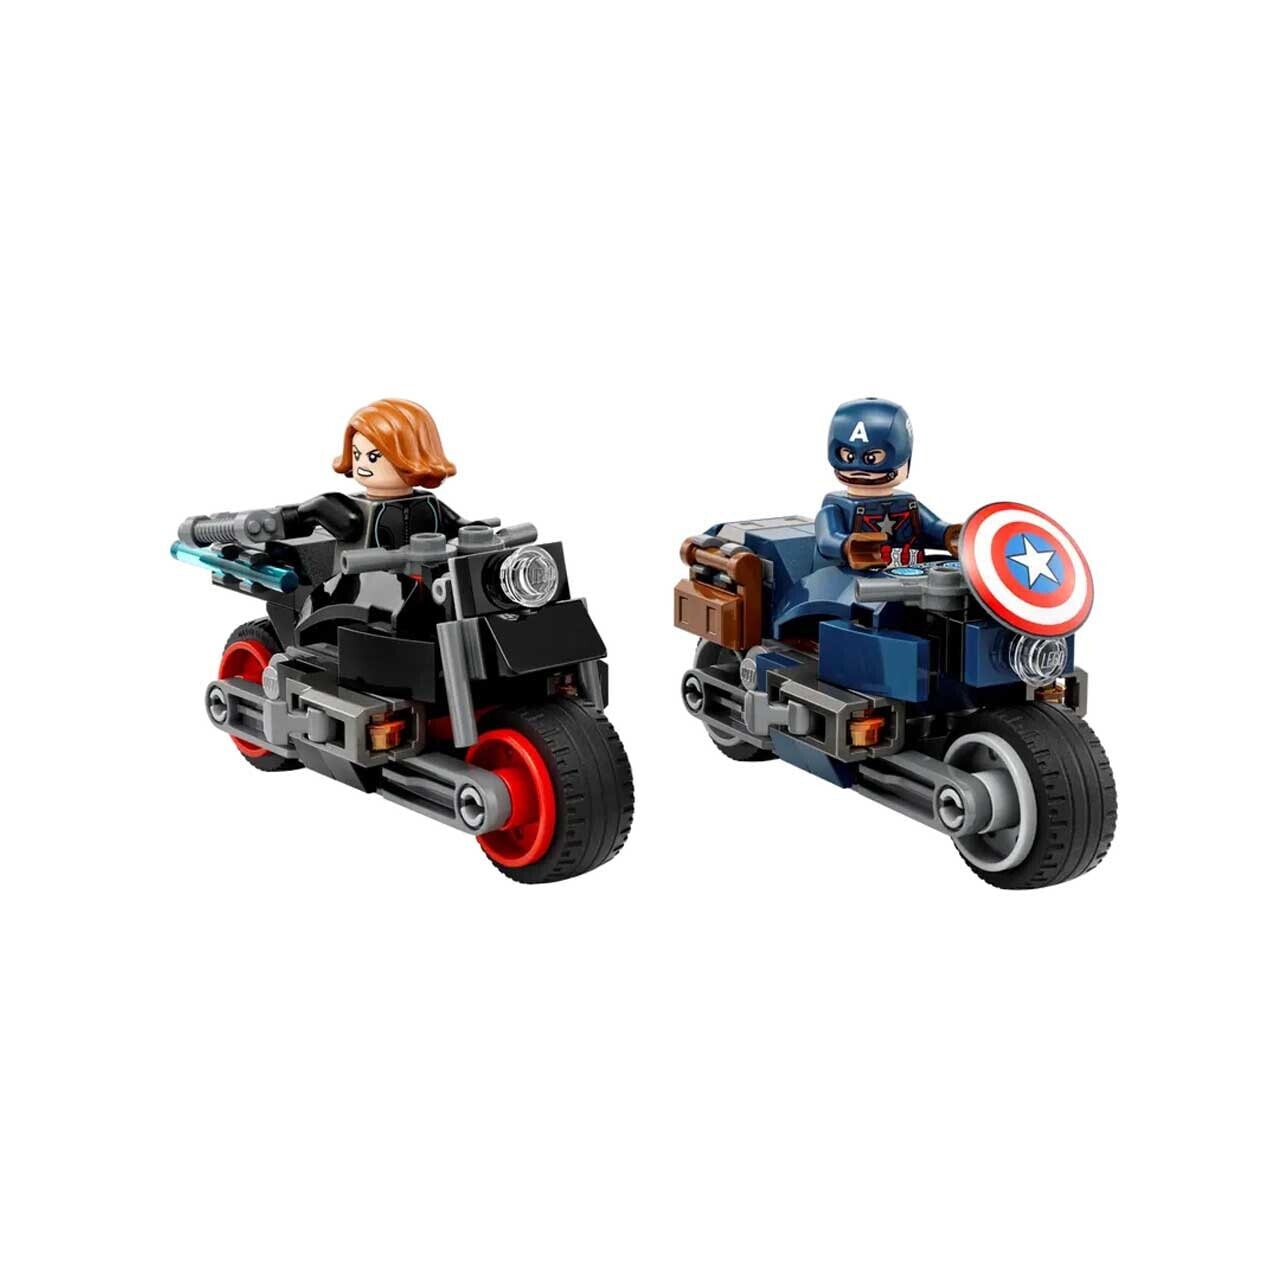 Конструктор LEGO Marvel Super Heroes Черная вдова и Капитан Америка, 130 деталей, 76260 конструктор lego marvel super heroes черная вдова и капитан америка 130 деталей 76260